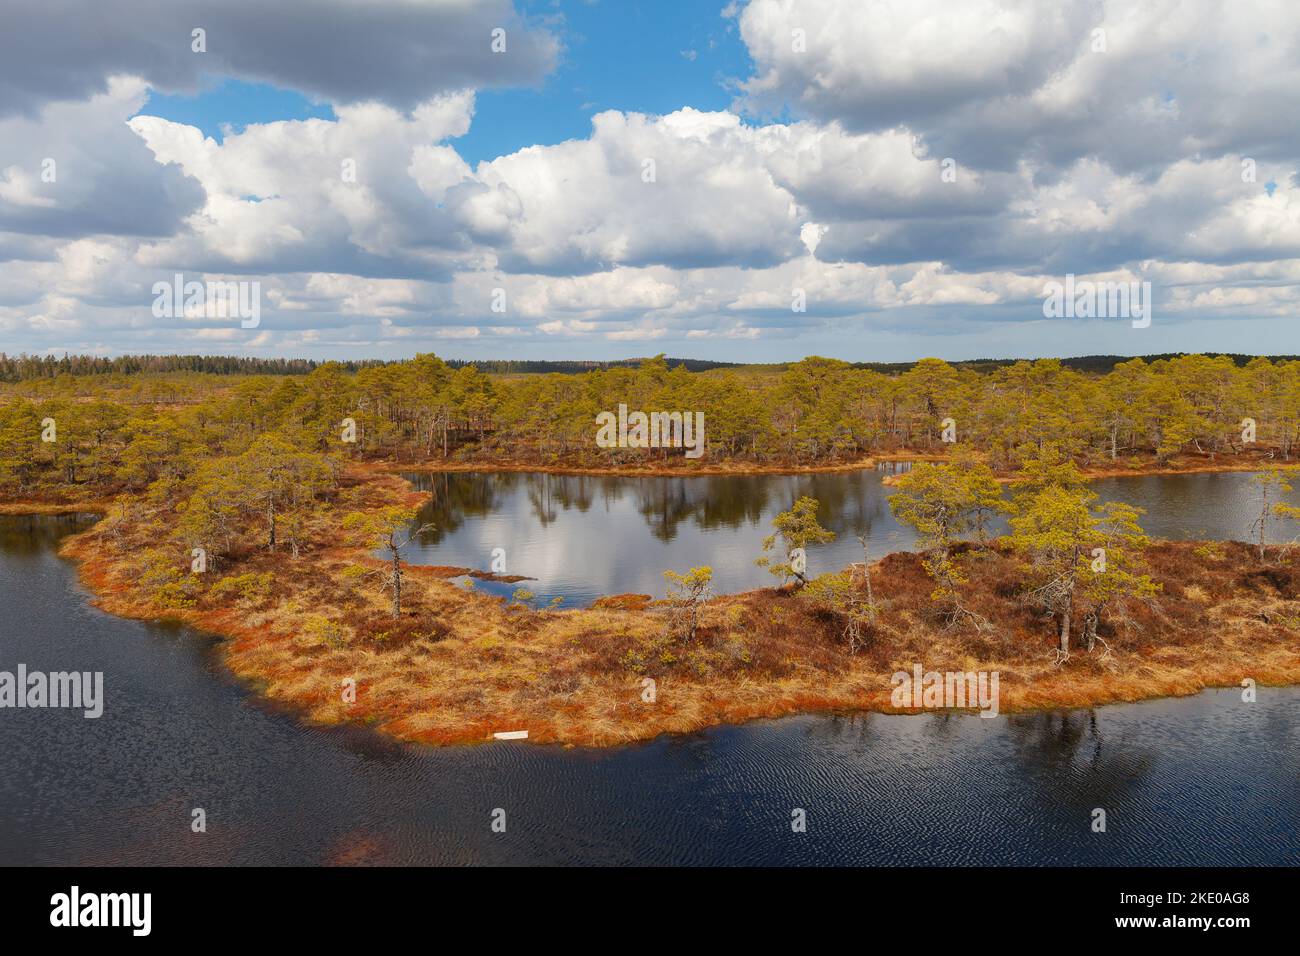 Palude con laghi, palude nella riserva naturale estone. Foto Stock